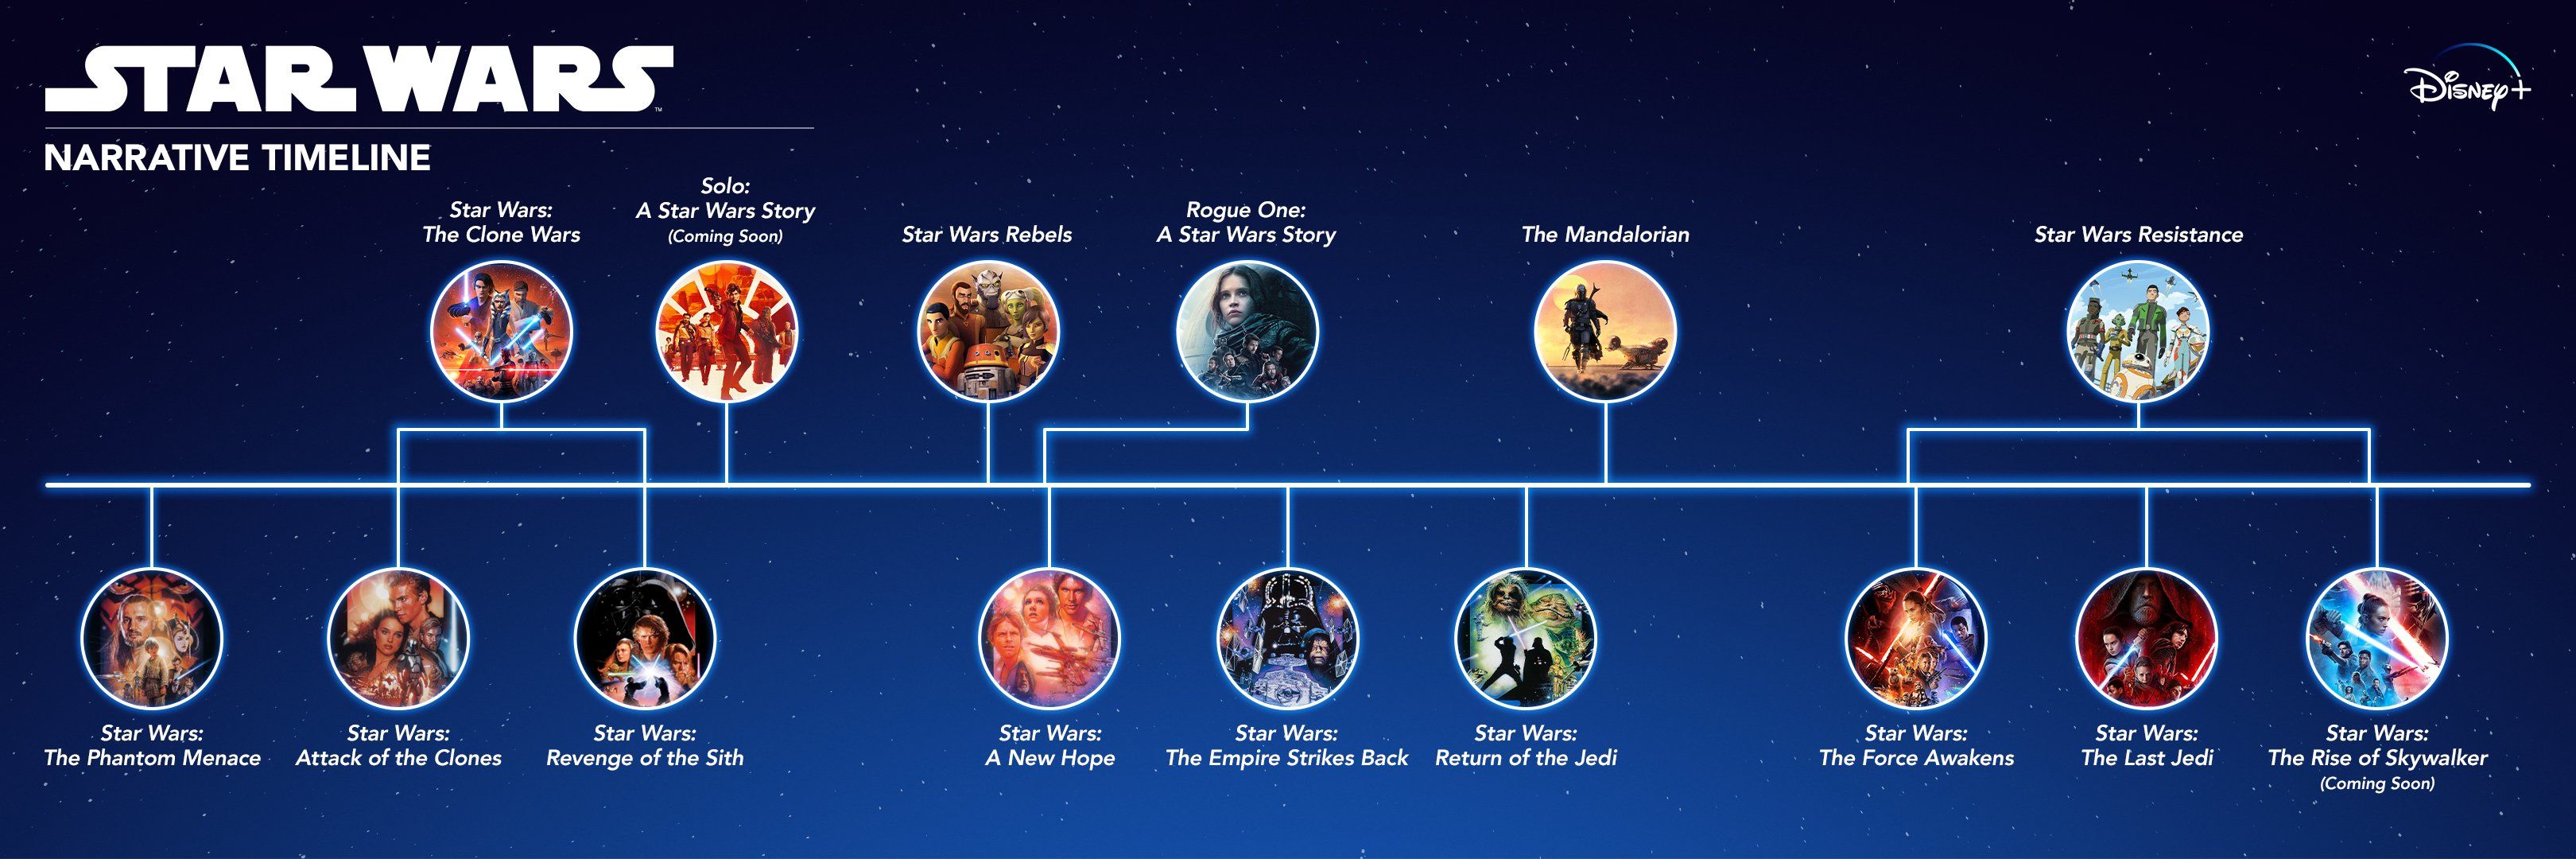 Star Wars zaman çizelgesi resmi olarak açıklandı